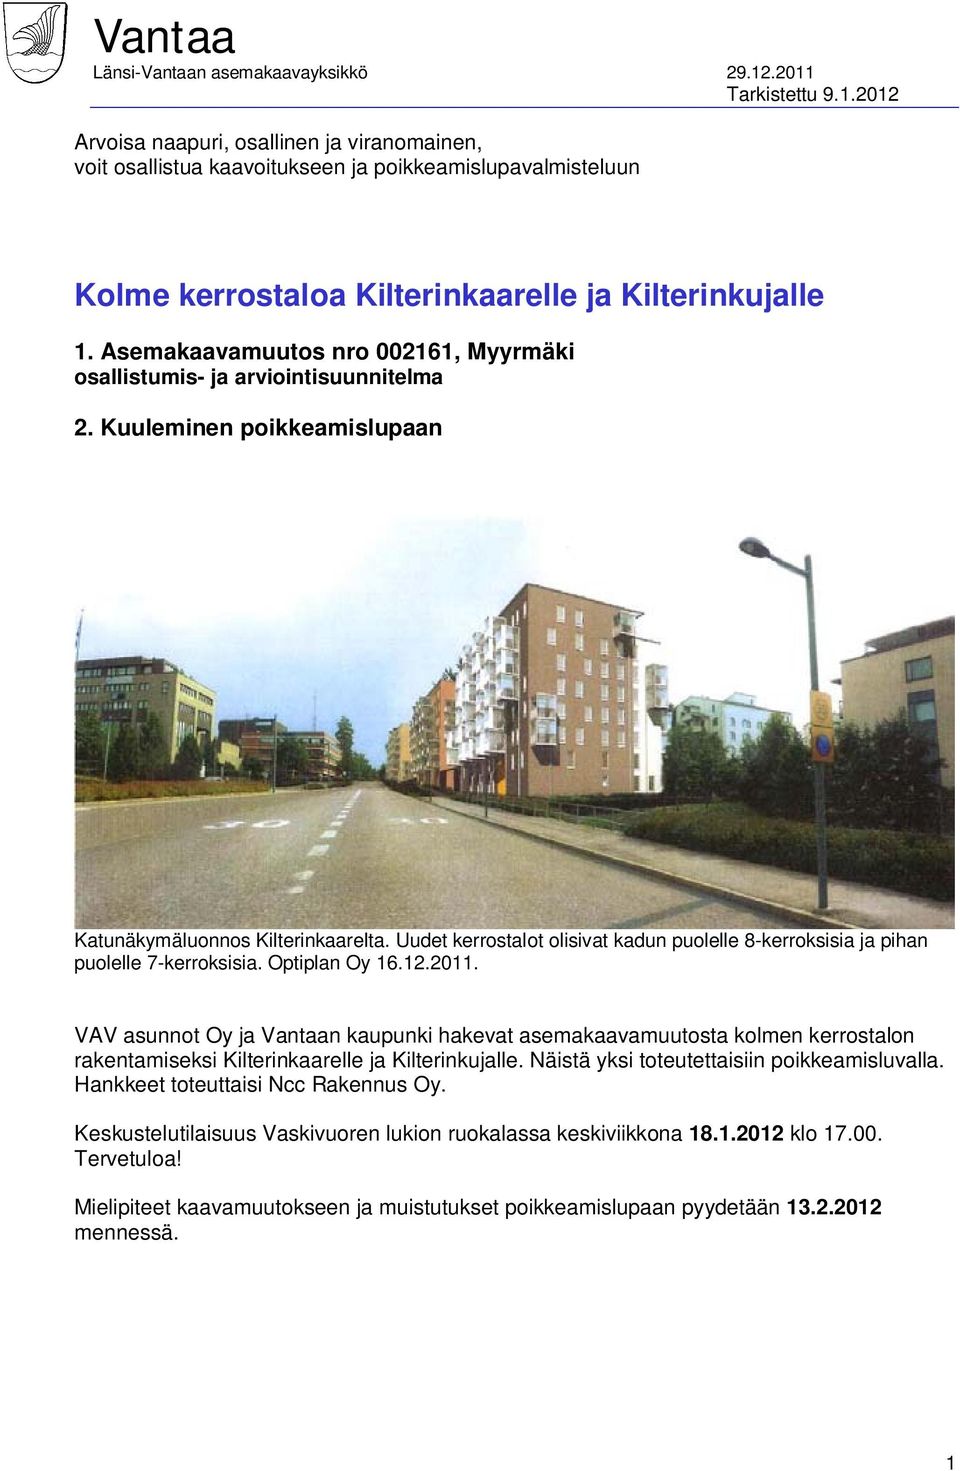 Asemakaavamuutos nro 002161, Myyrmäki osallistumis- ja arviointisuunnitelma 2. Kuuleminen poikkeamislupaan Katunäkymäluonnos Kilterinkaarelta.